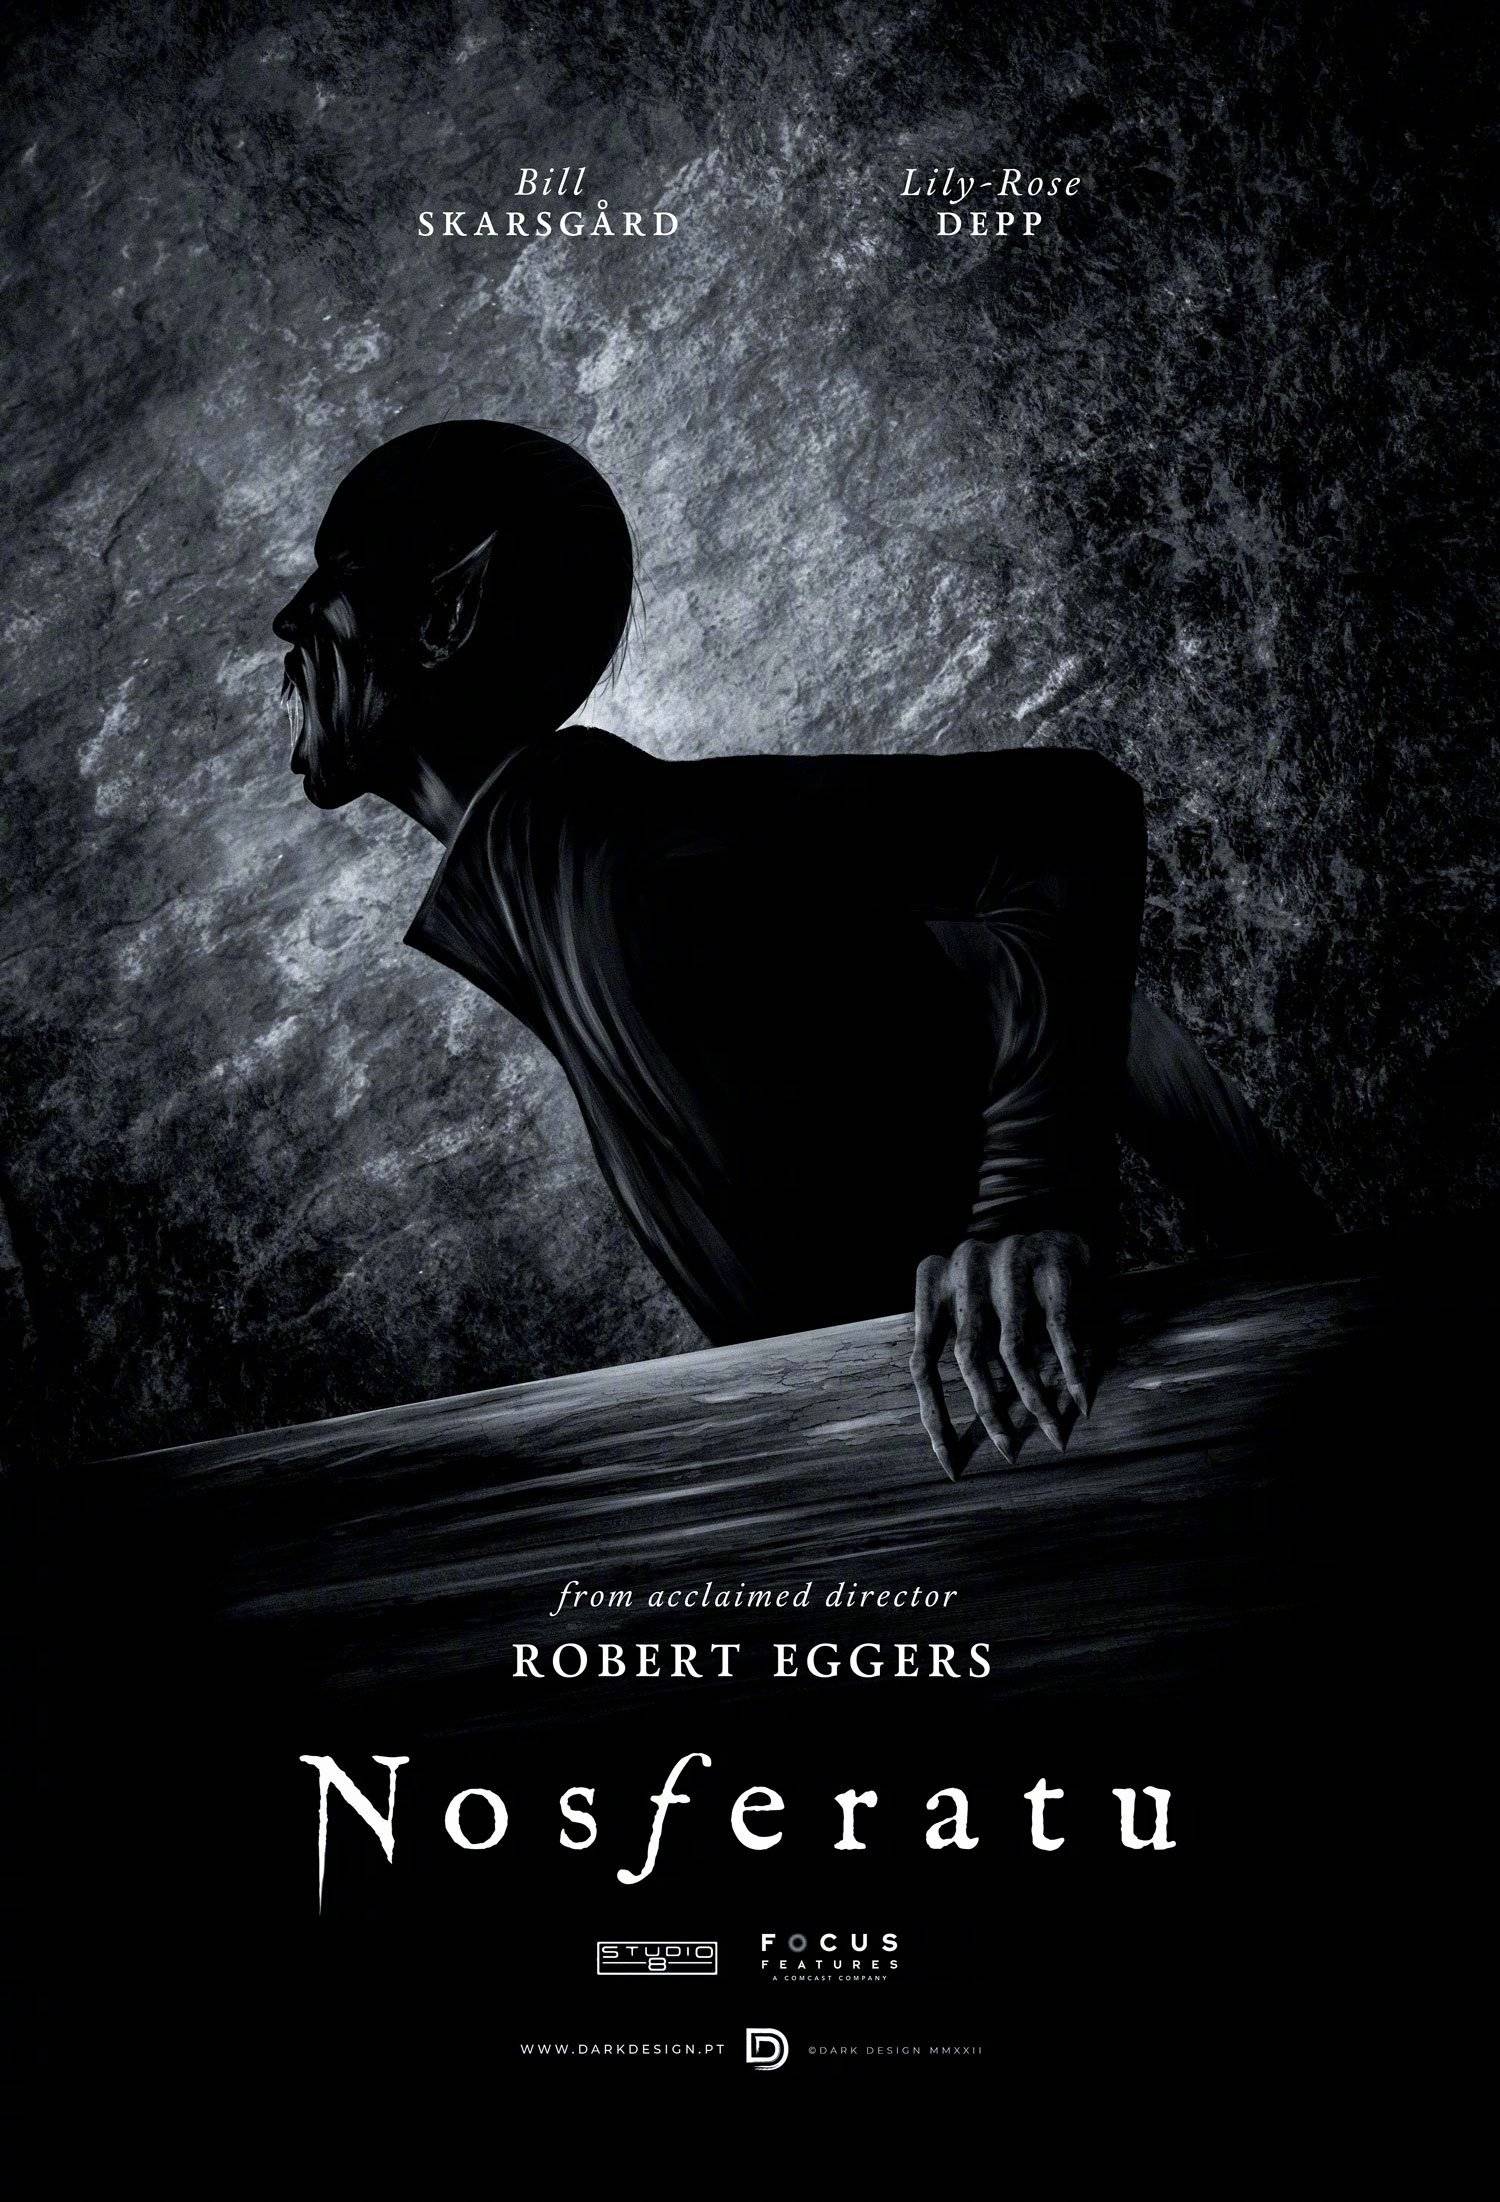 经典吸血鬼恐怖片《诺斯费拉图》翻拍版杀青 德普女儿,尼古拉斯